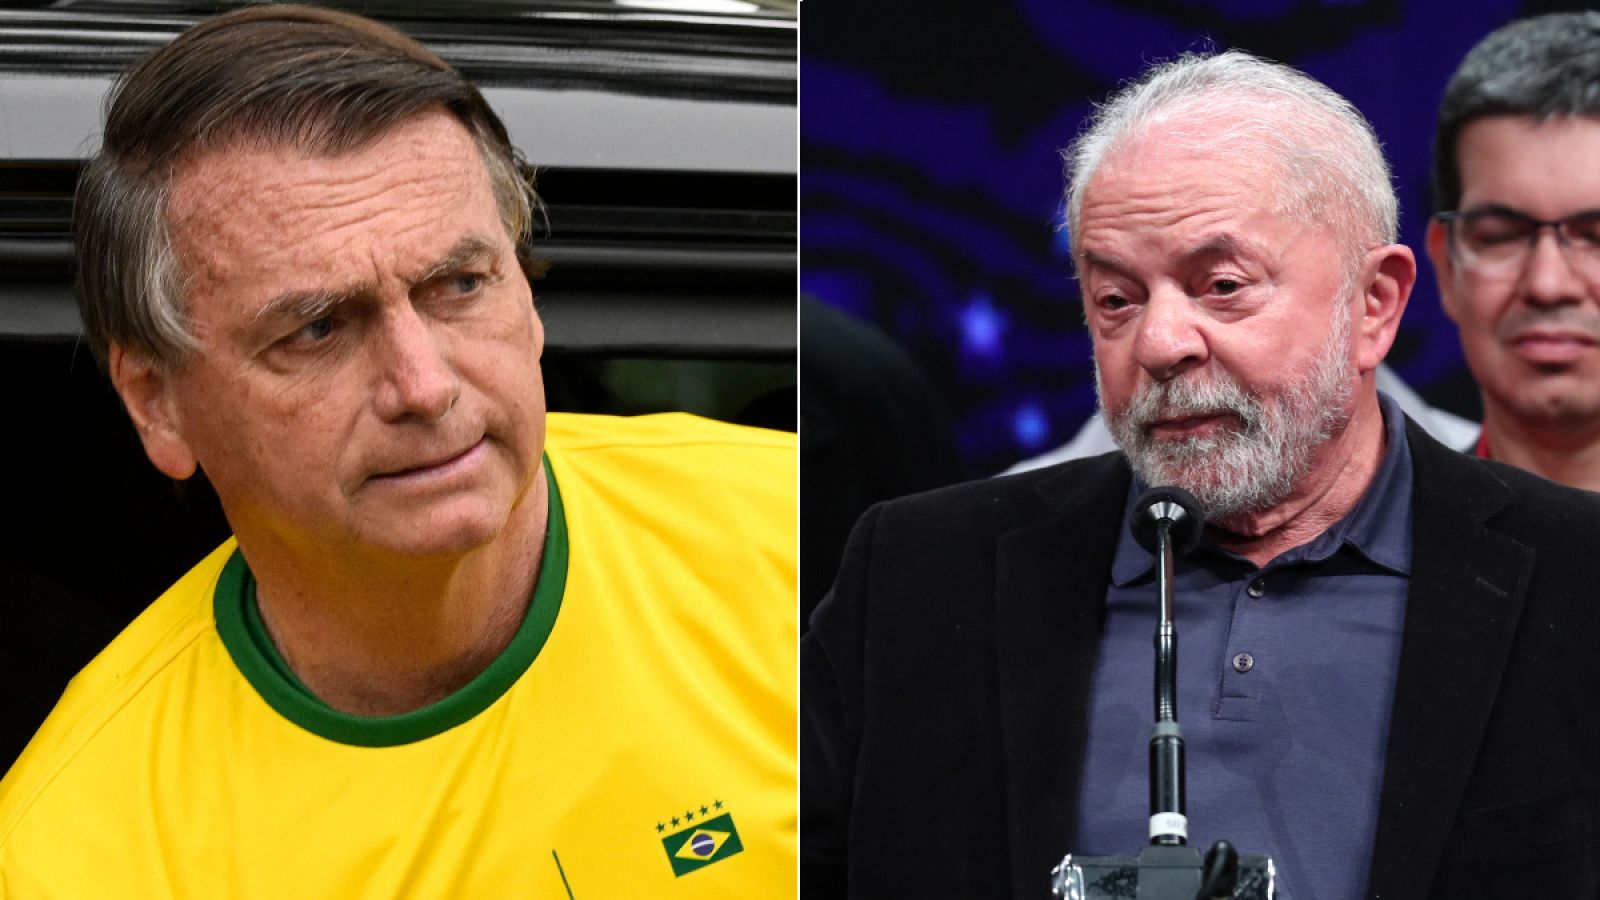 Elecciones Brasil: Lula gana pero tendrá que medirse a Bolsonaro en una segunda vuelta